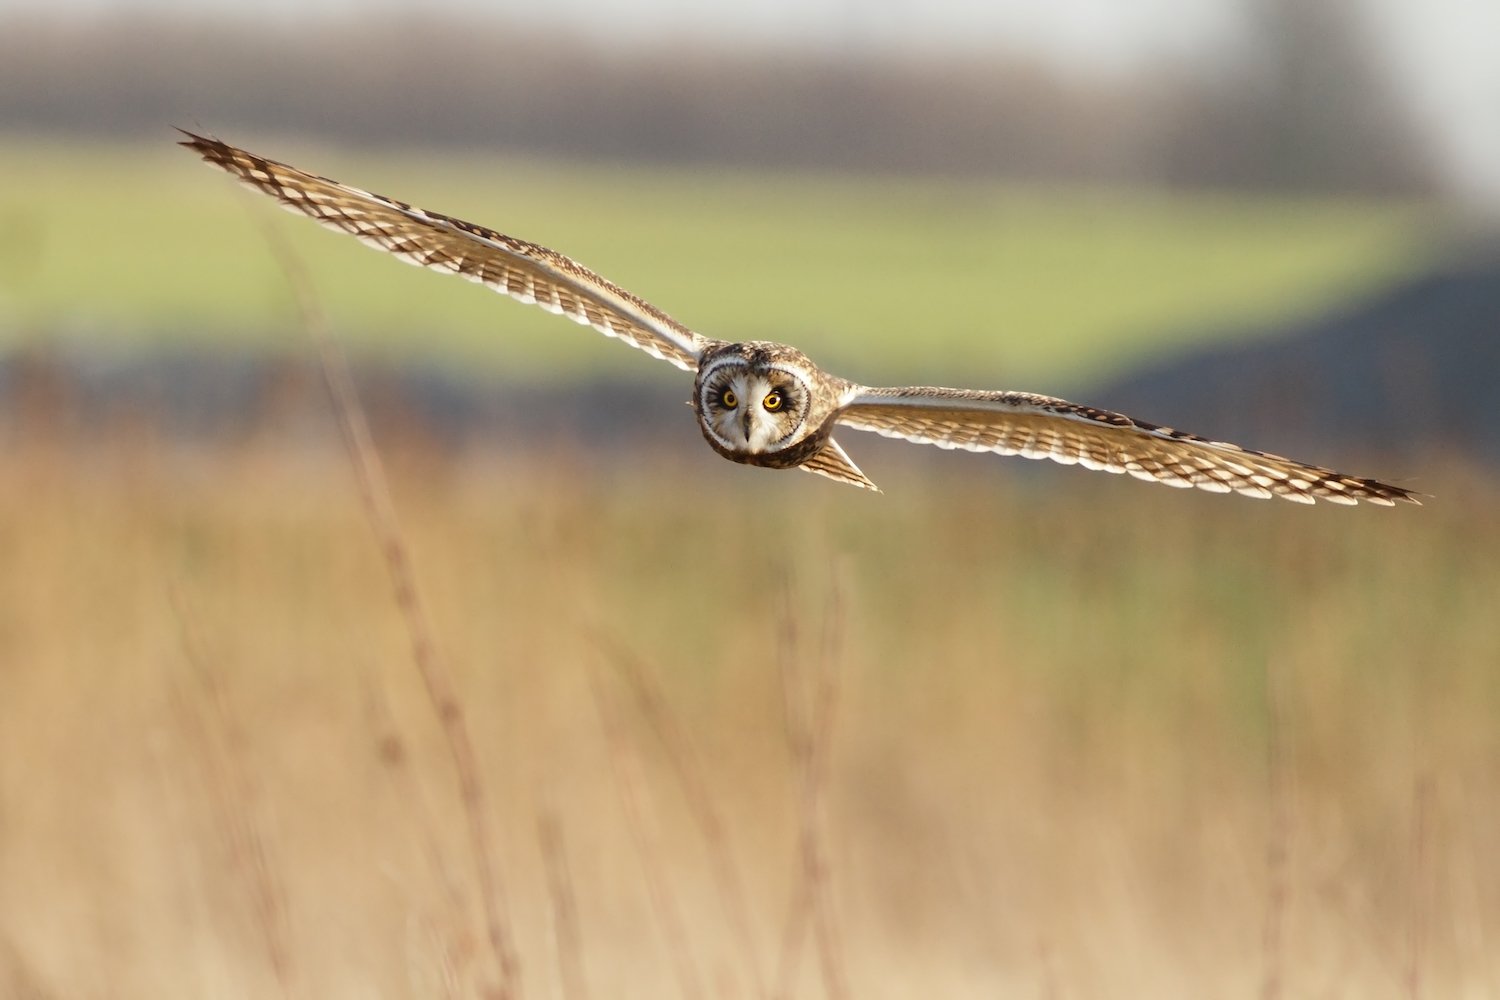 A short-eared owl in flight.